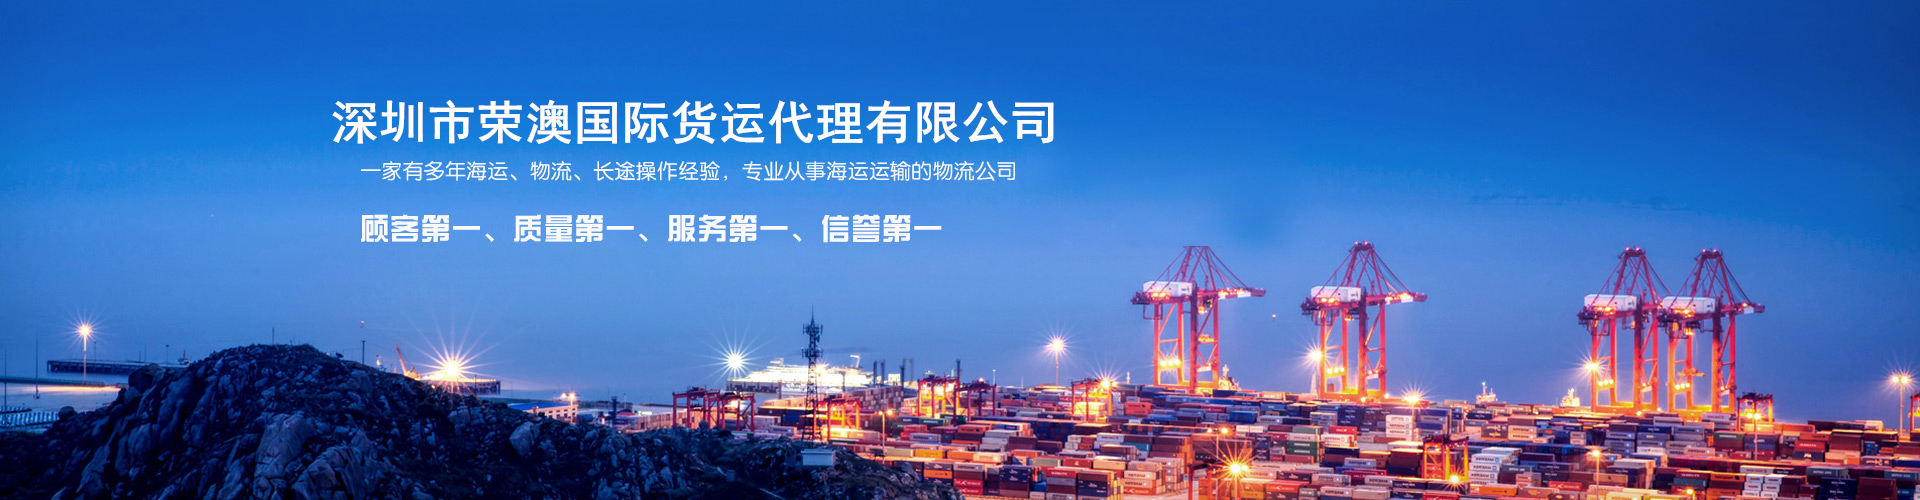 北京食品海运澳洲怎么操作 深圳市荣澳国际货运代理有限公司